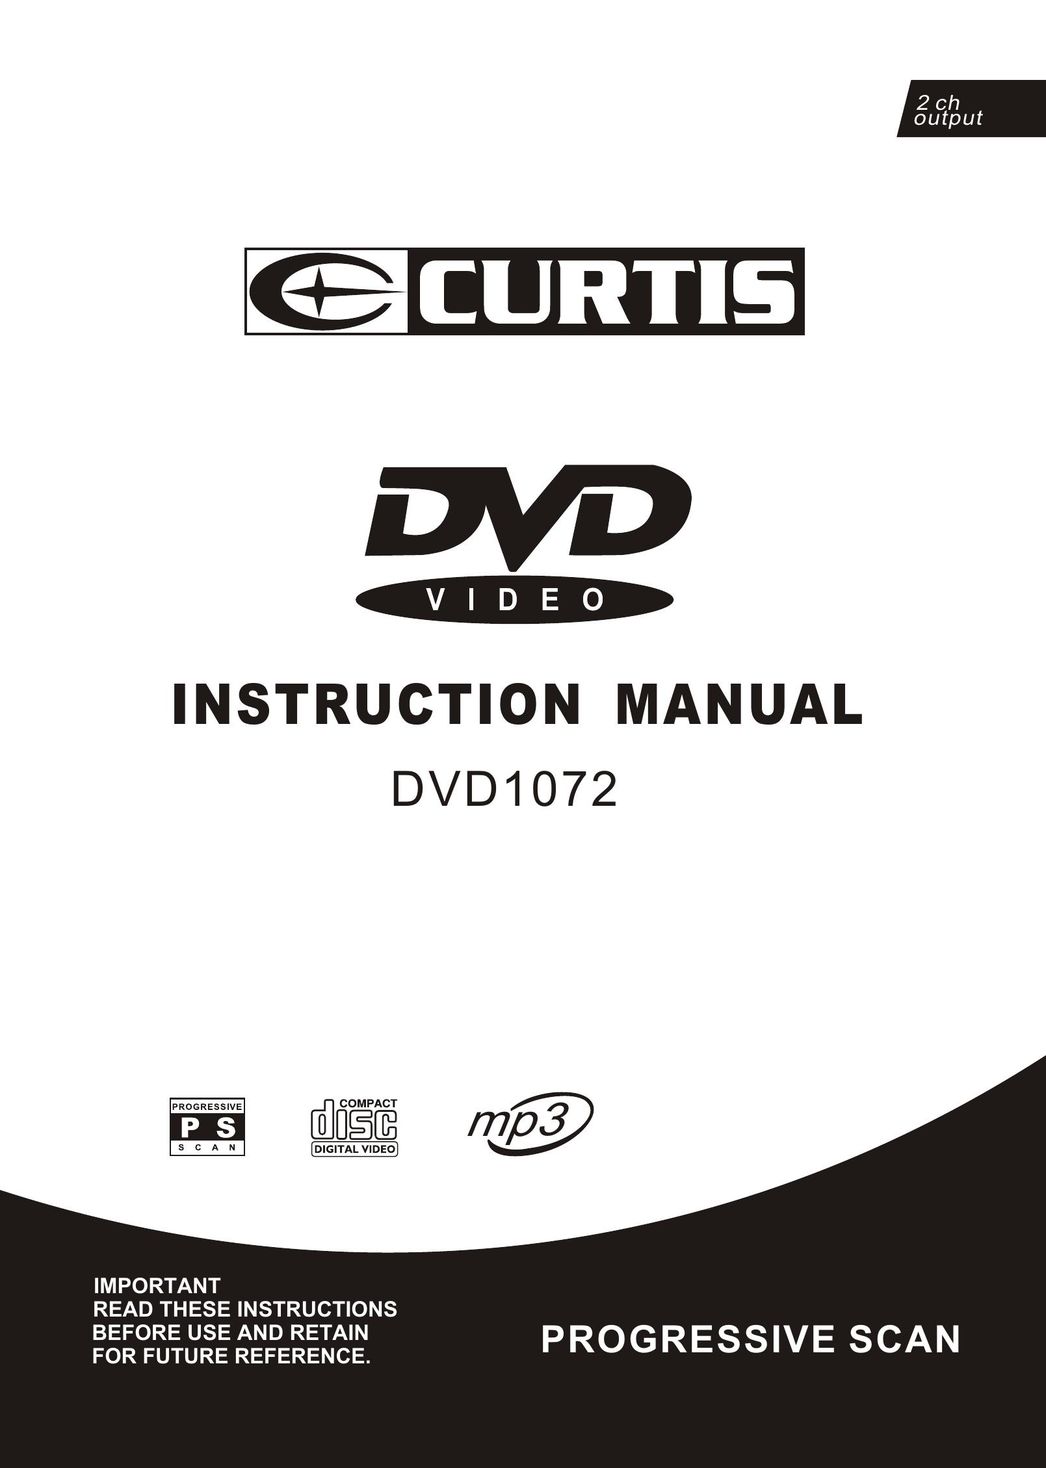 Curtis DVD DVD1072 DVD Player User Manual